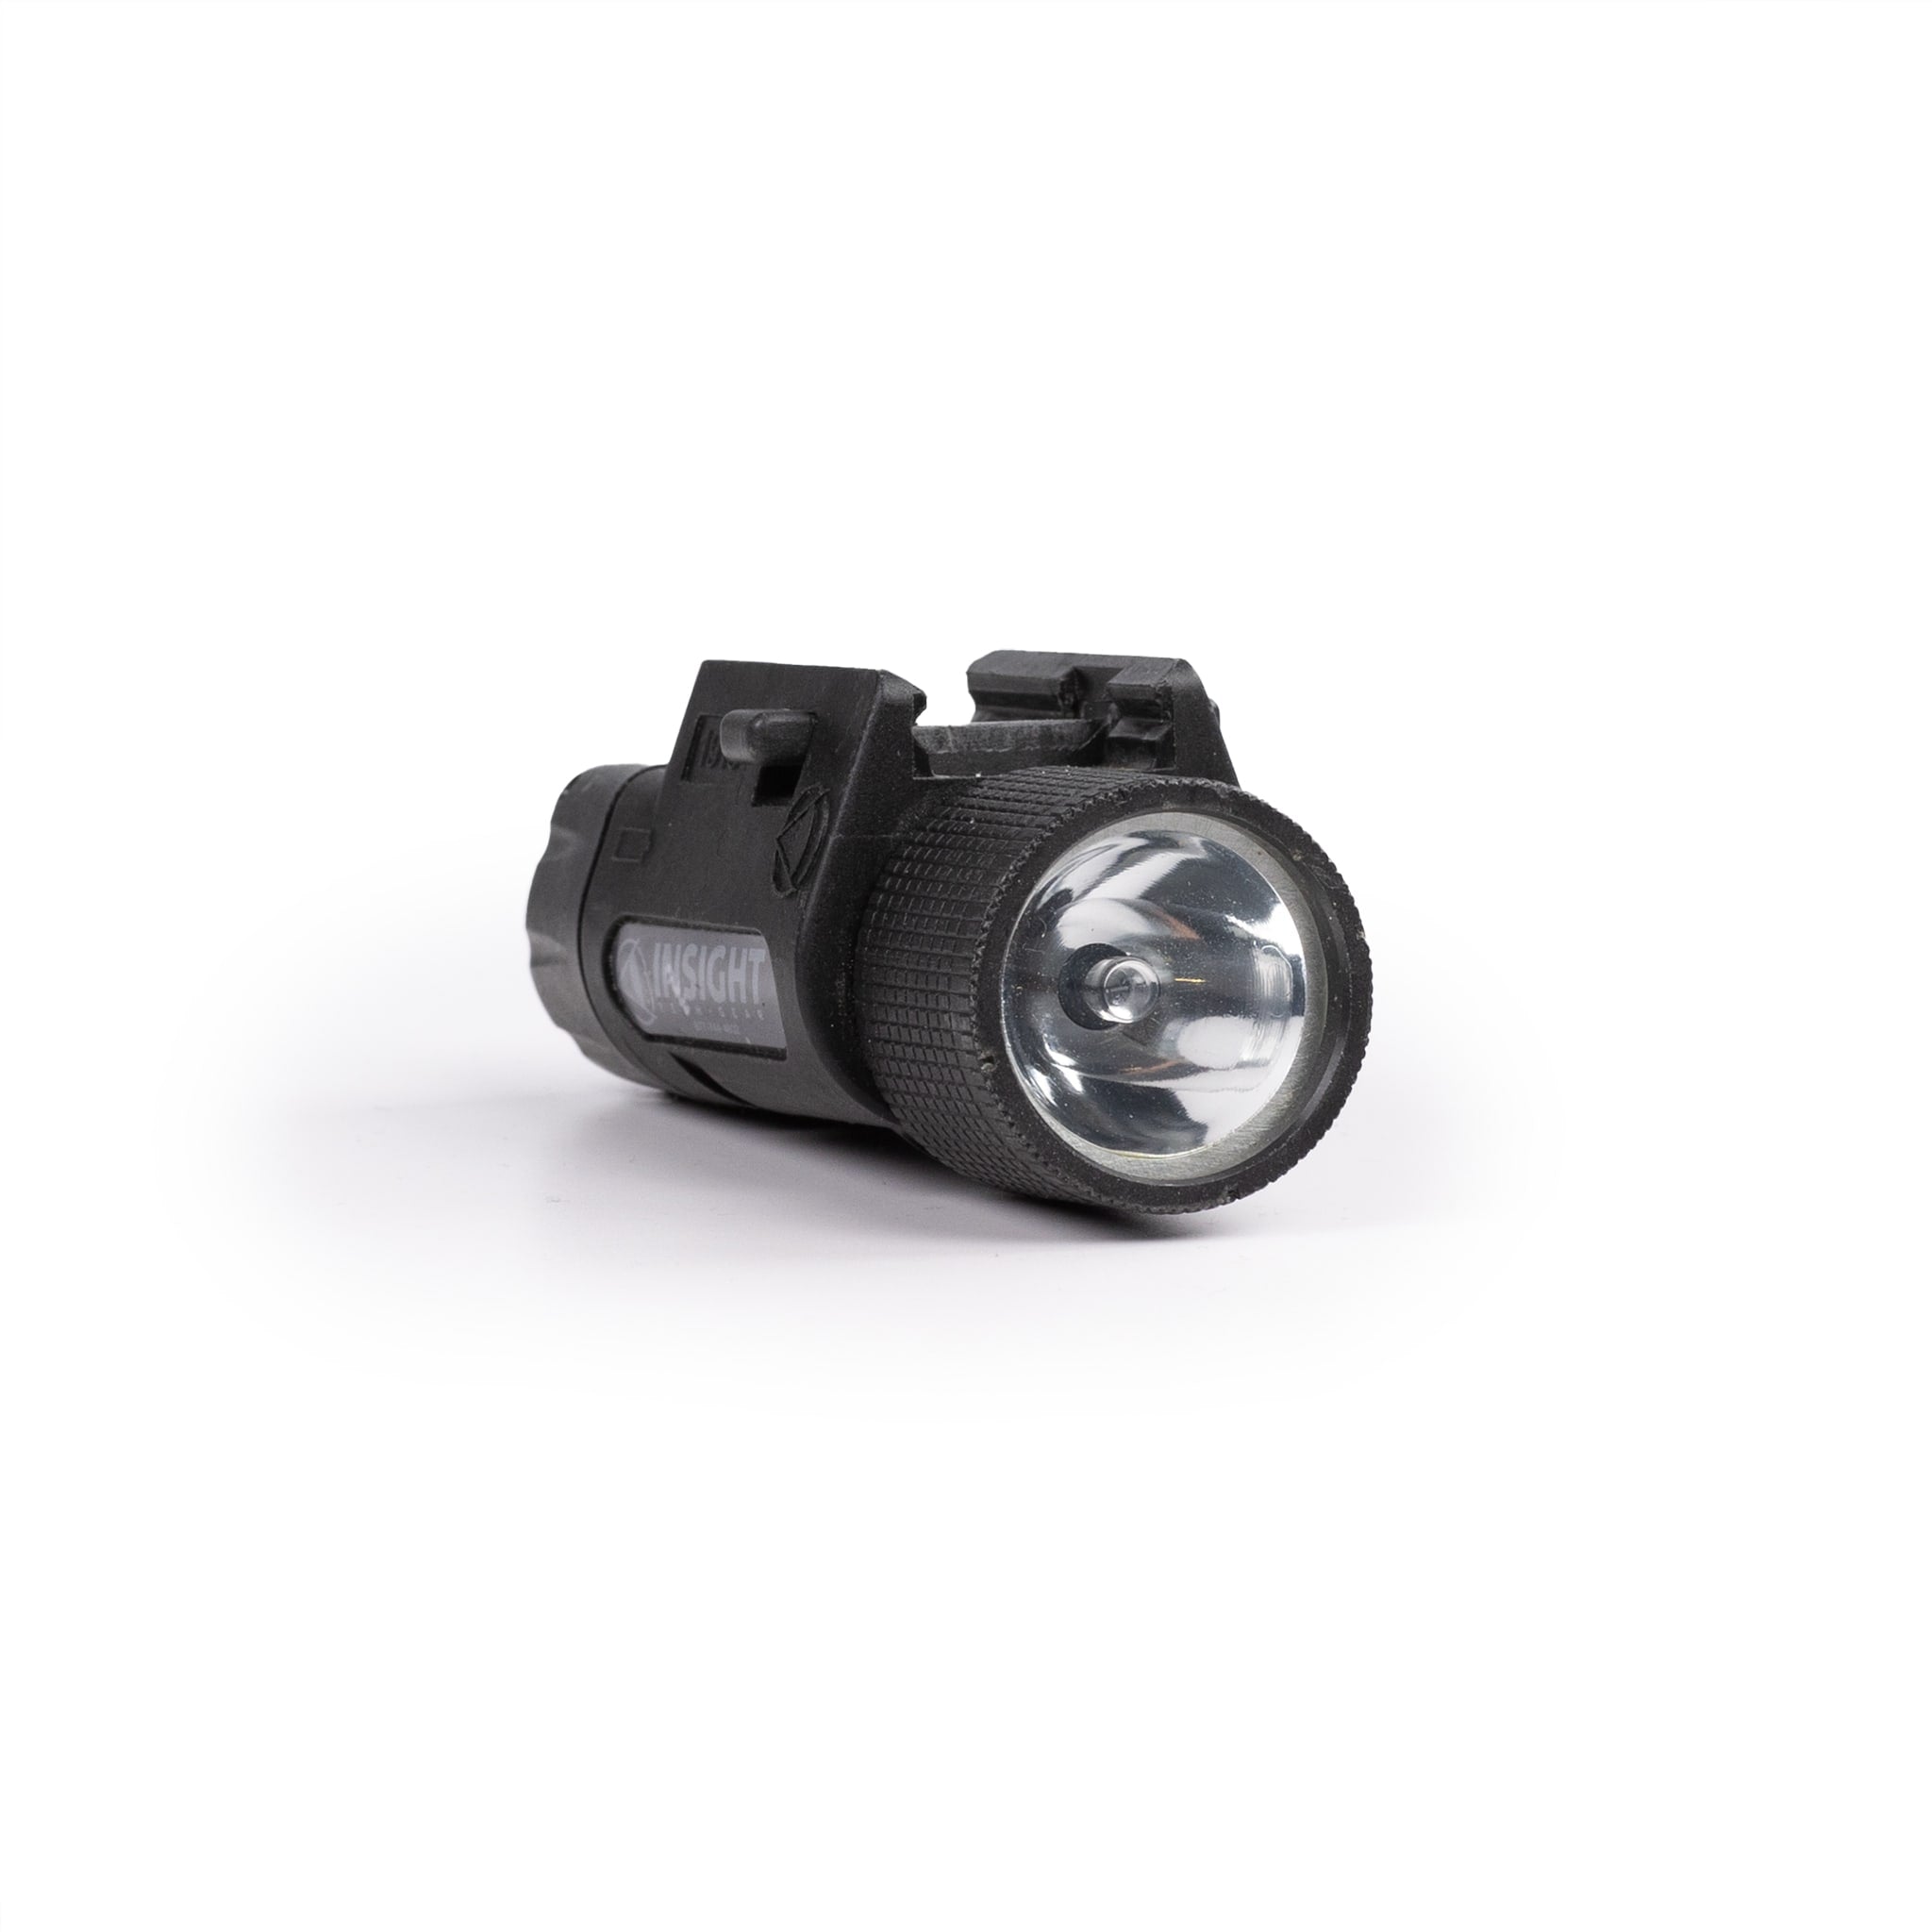 Insight/Streamlight M3 and M6 Series Lights – KommandoStore